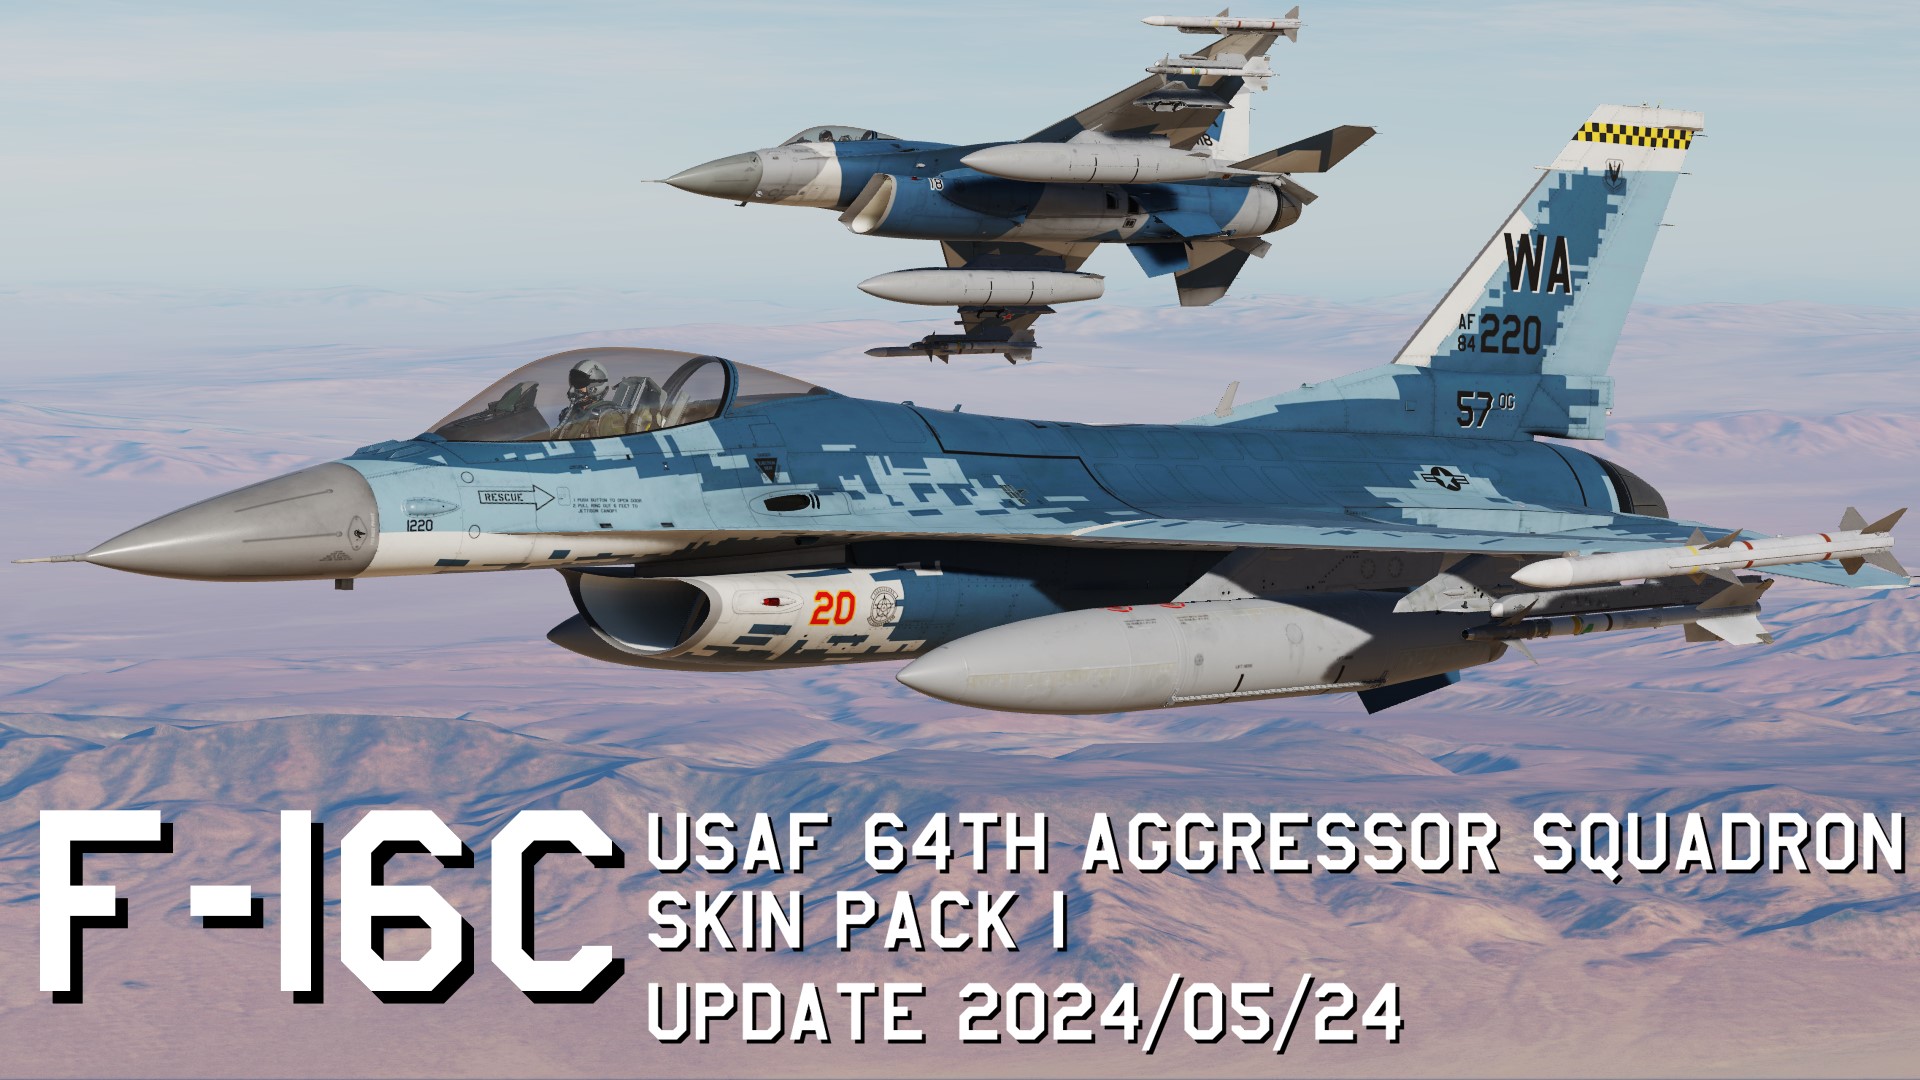 F-16C USAF 64th Aggressor Squadron Skin Pack 1 update 2024/05/24